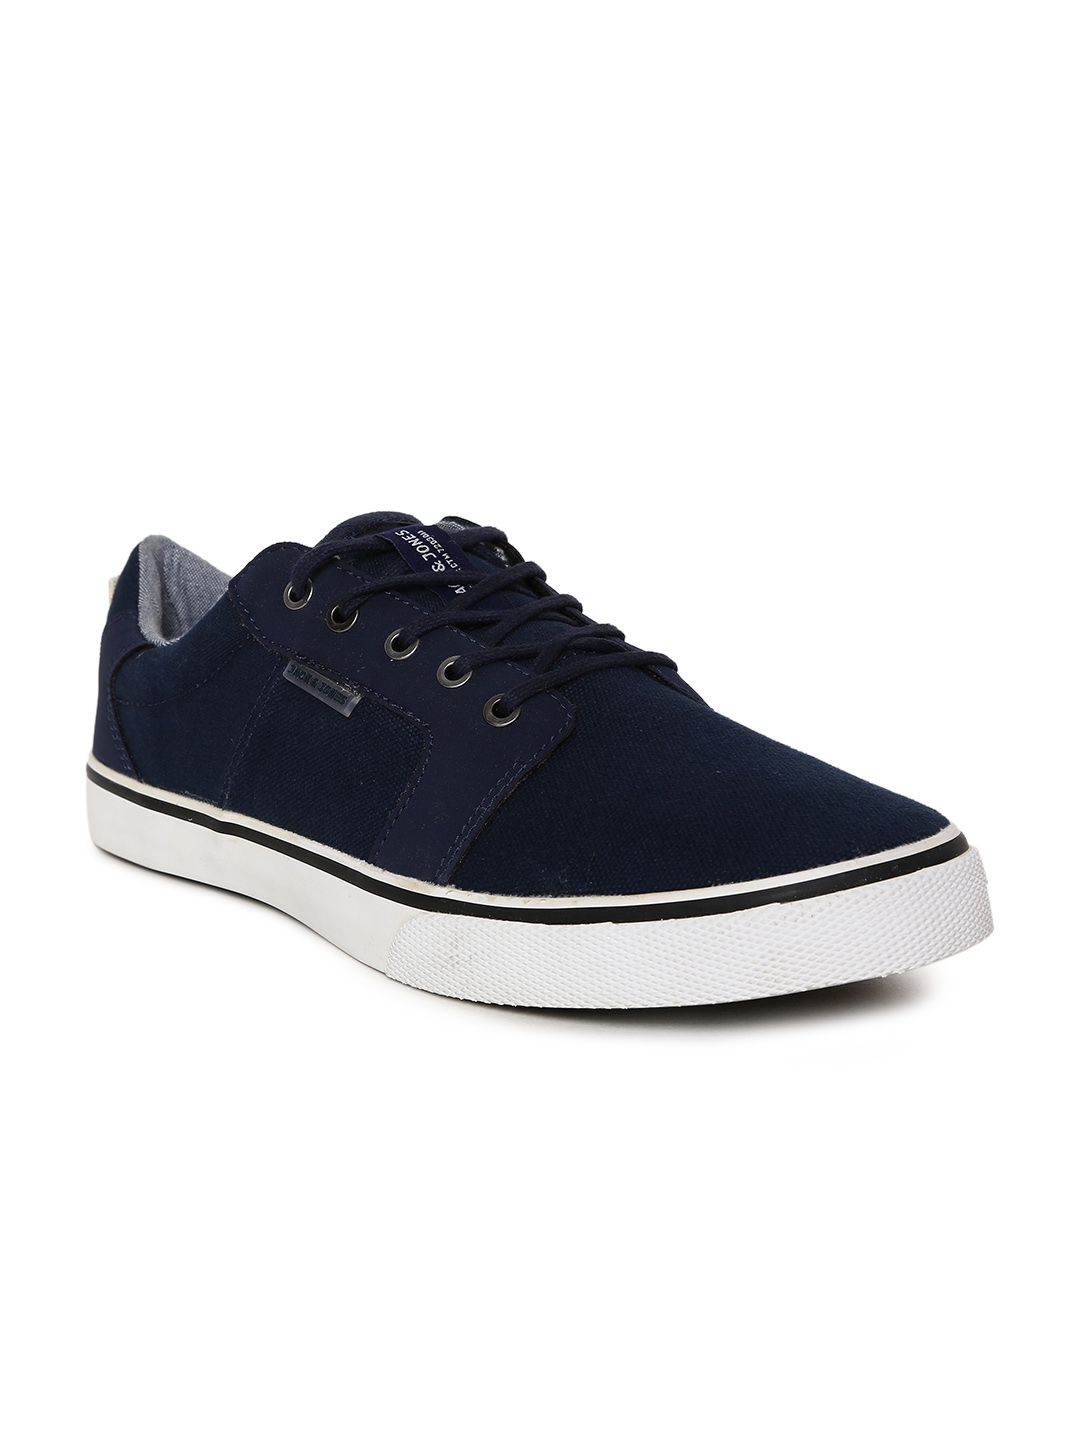 Buy Jack & Jones Men Navy Blue Sneakers - Casual Shoes for Men 2442543 ...